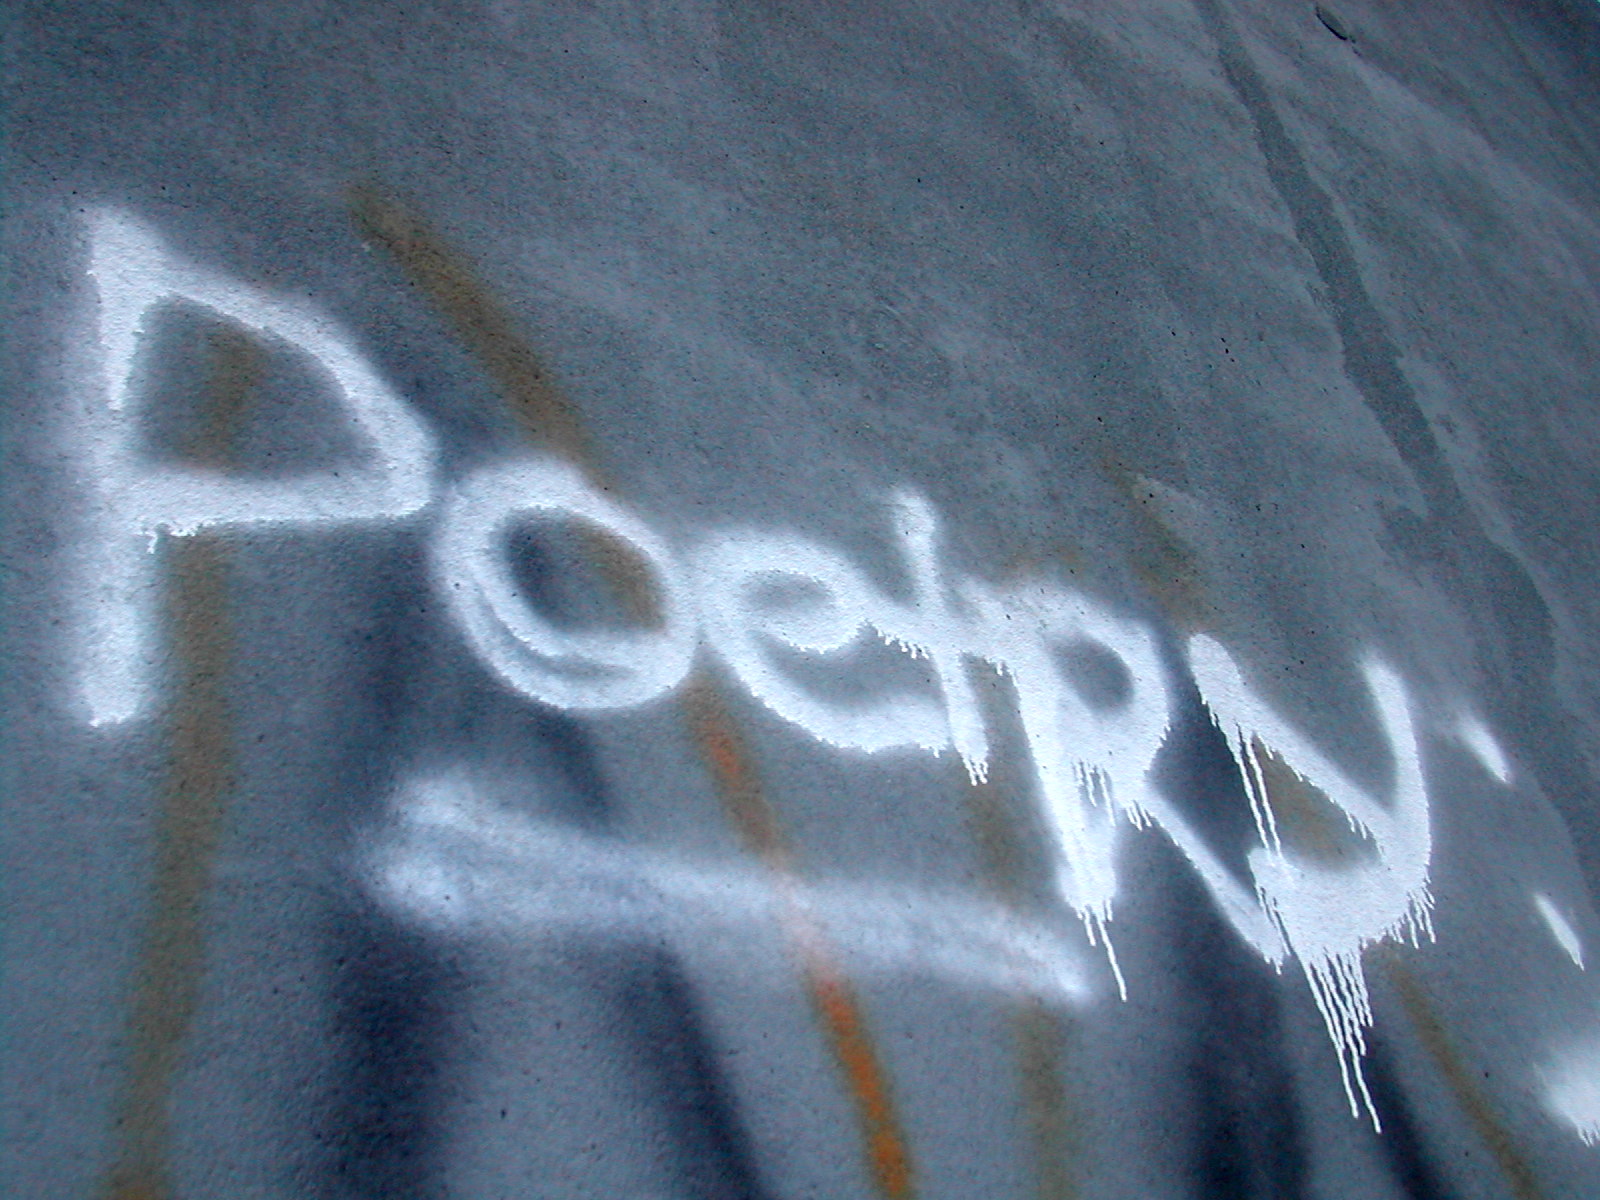 "Graffitti spelling poetry"